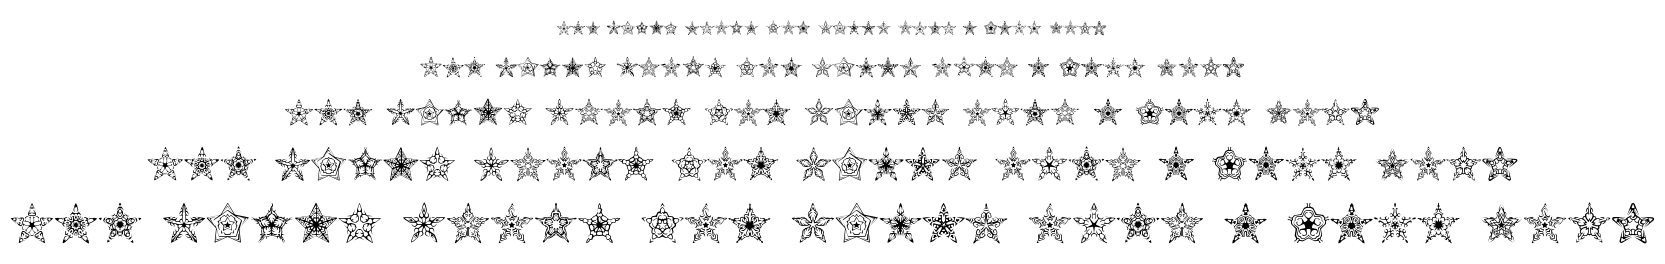 90 Stars BRK font